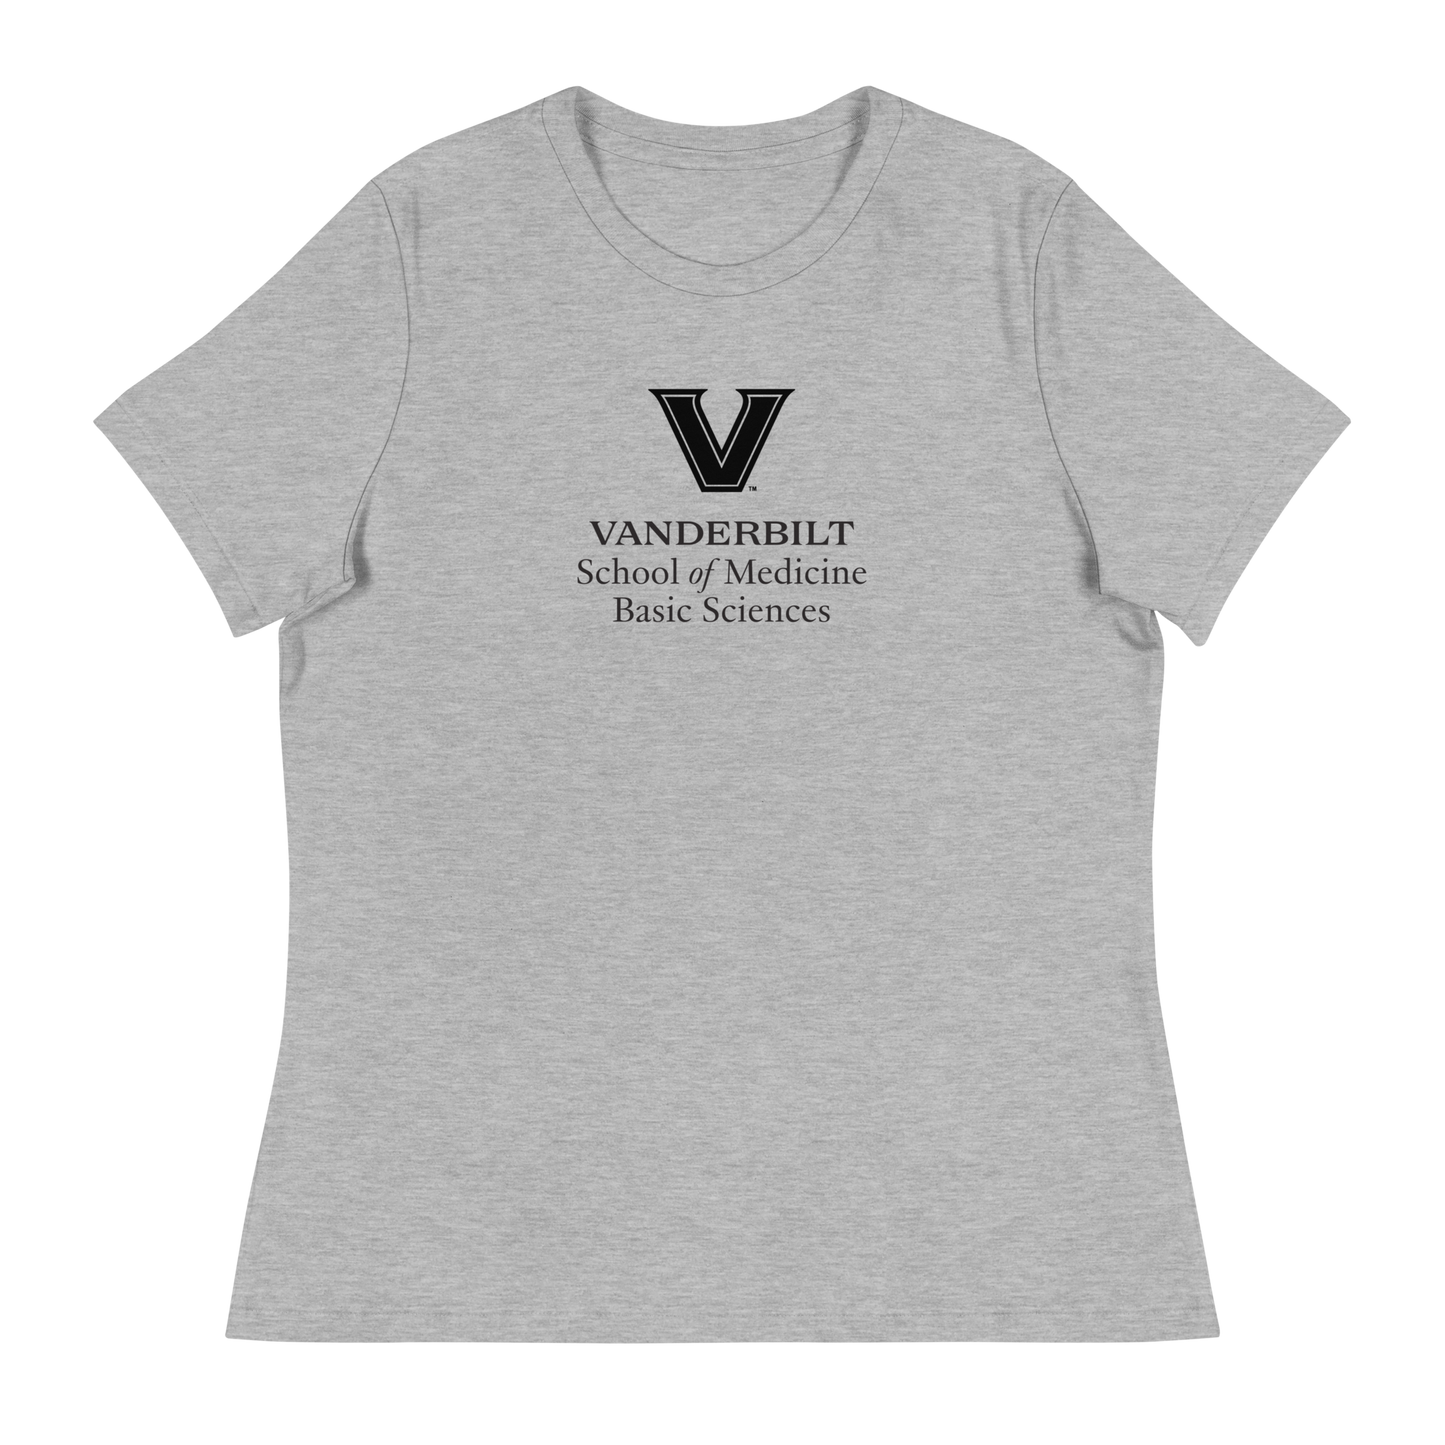 VU Basic Sciences Women's Relaxed T-Shirt